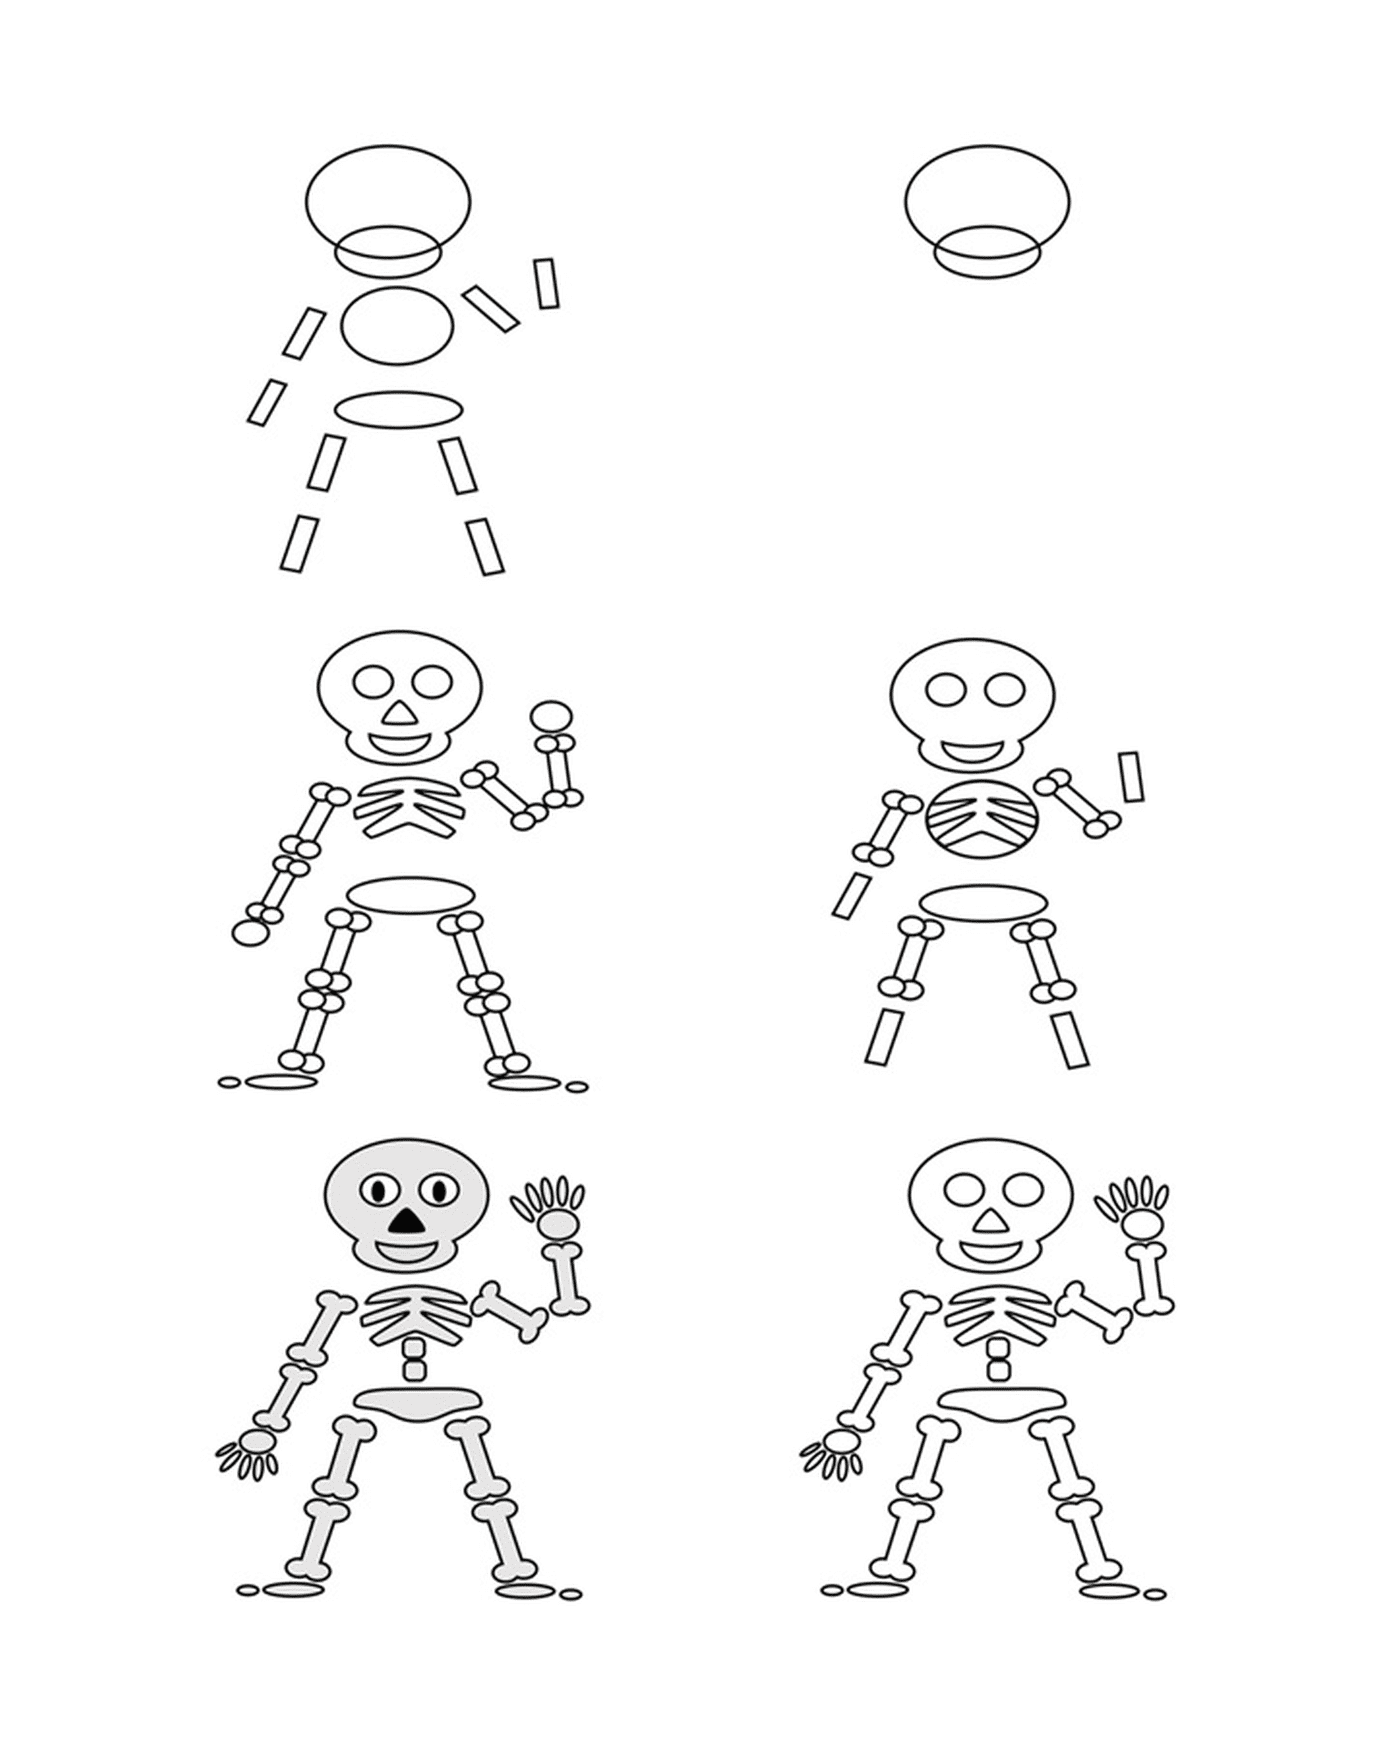  Cómo dibujar un esqueleto 